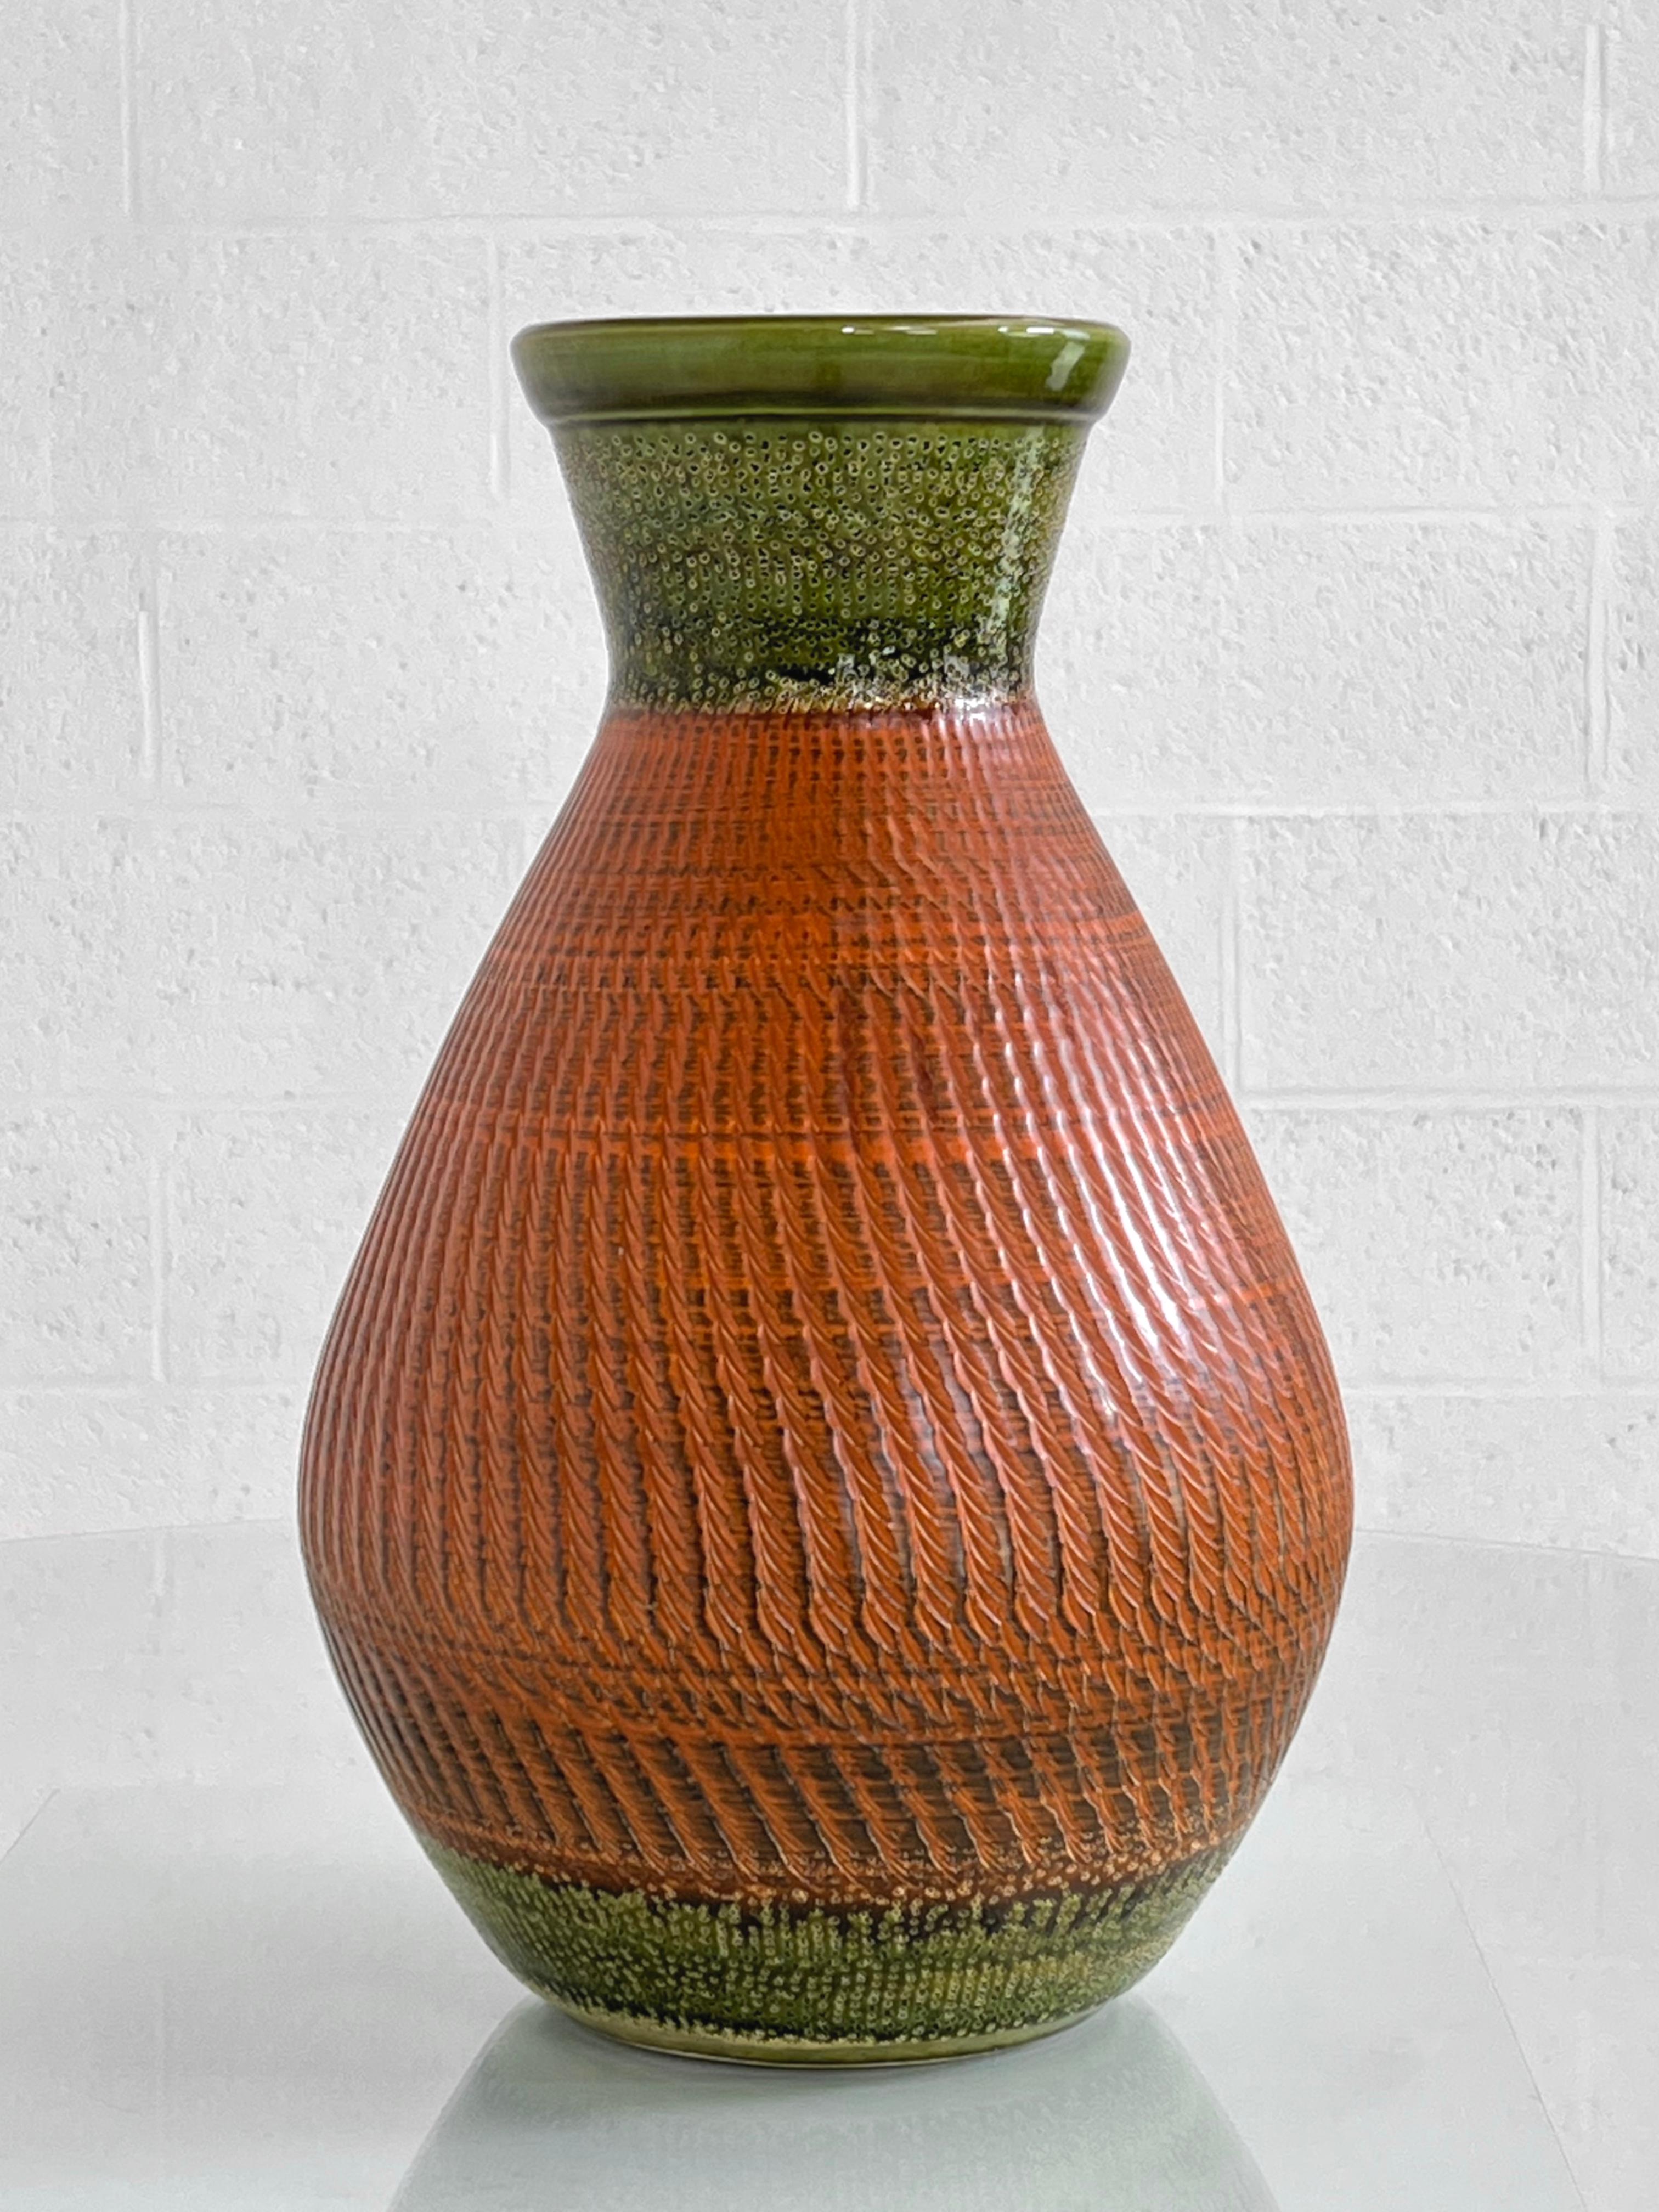 Vase en céramique fait à la main dans les années 1960 en Allemagne de l'Ouest avec une couleur orange et oliv à l'extérieur et une belle et profonde glaçure noire à l'intérieur.